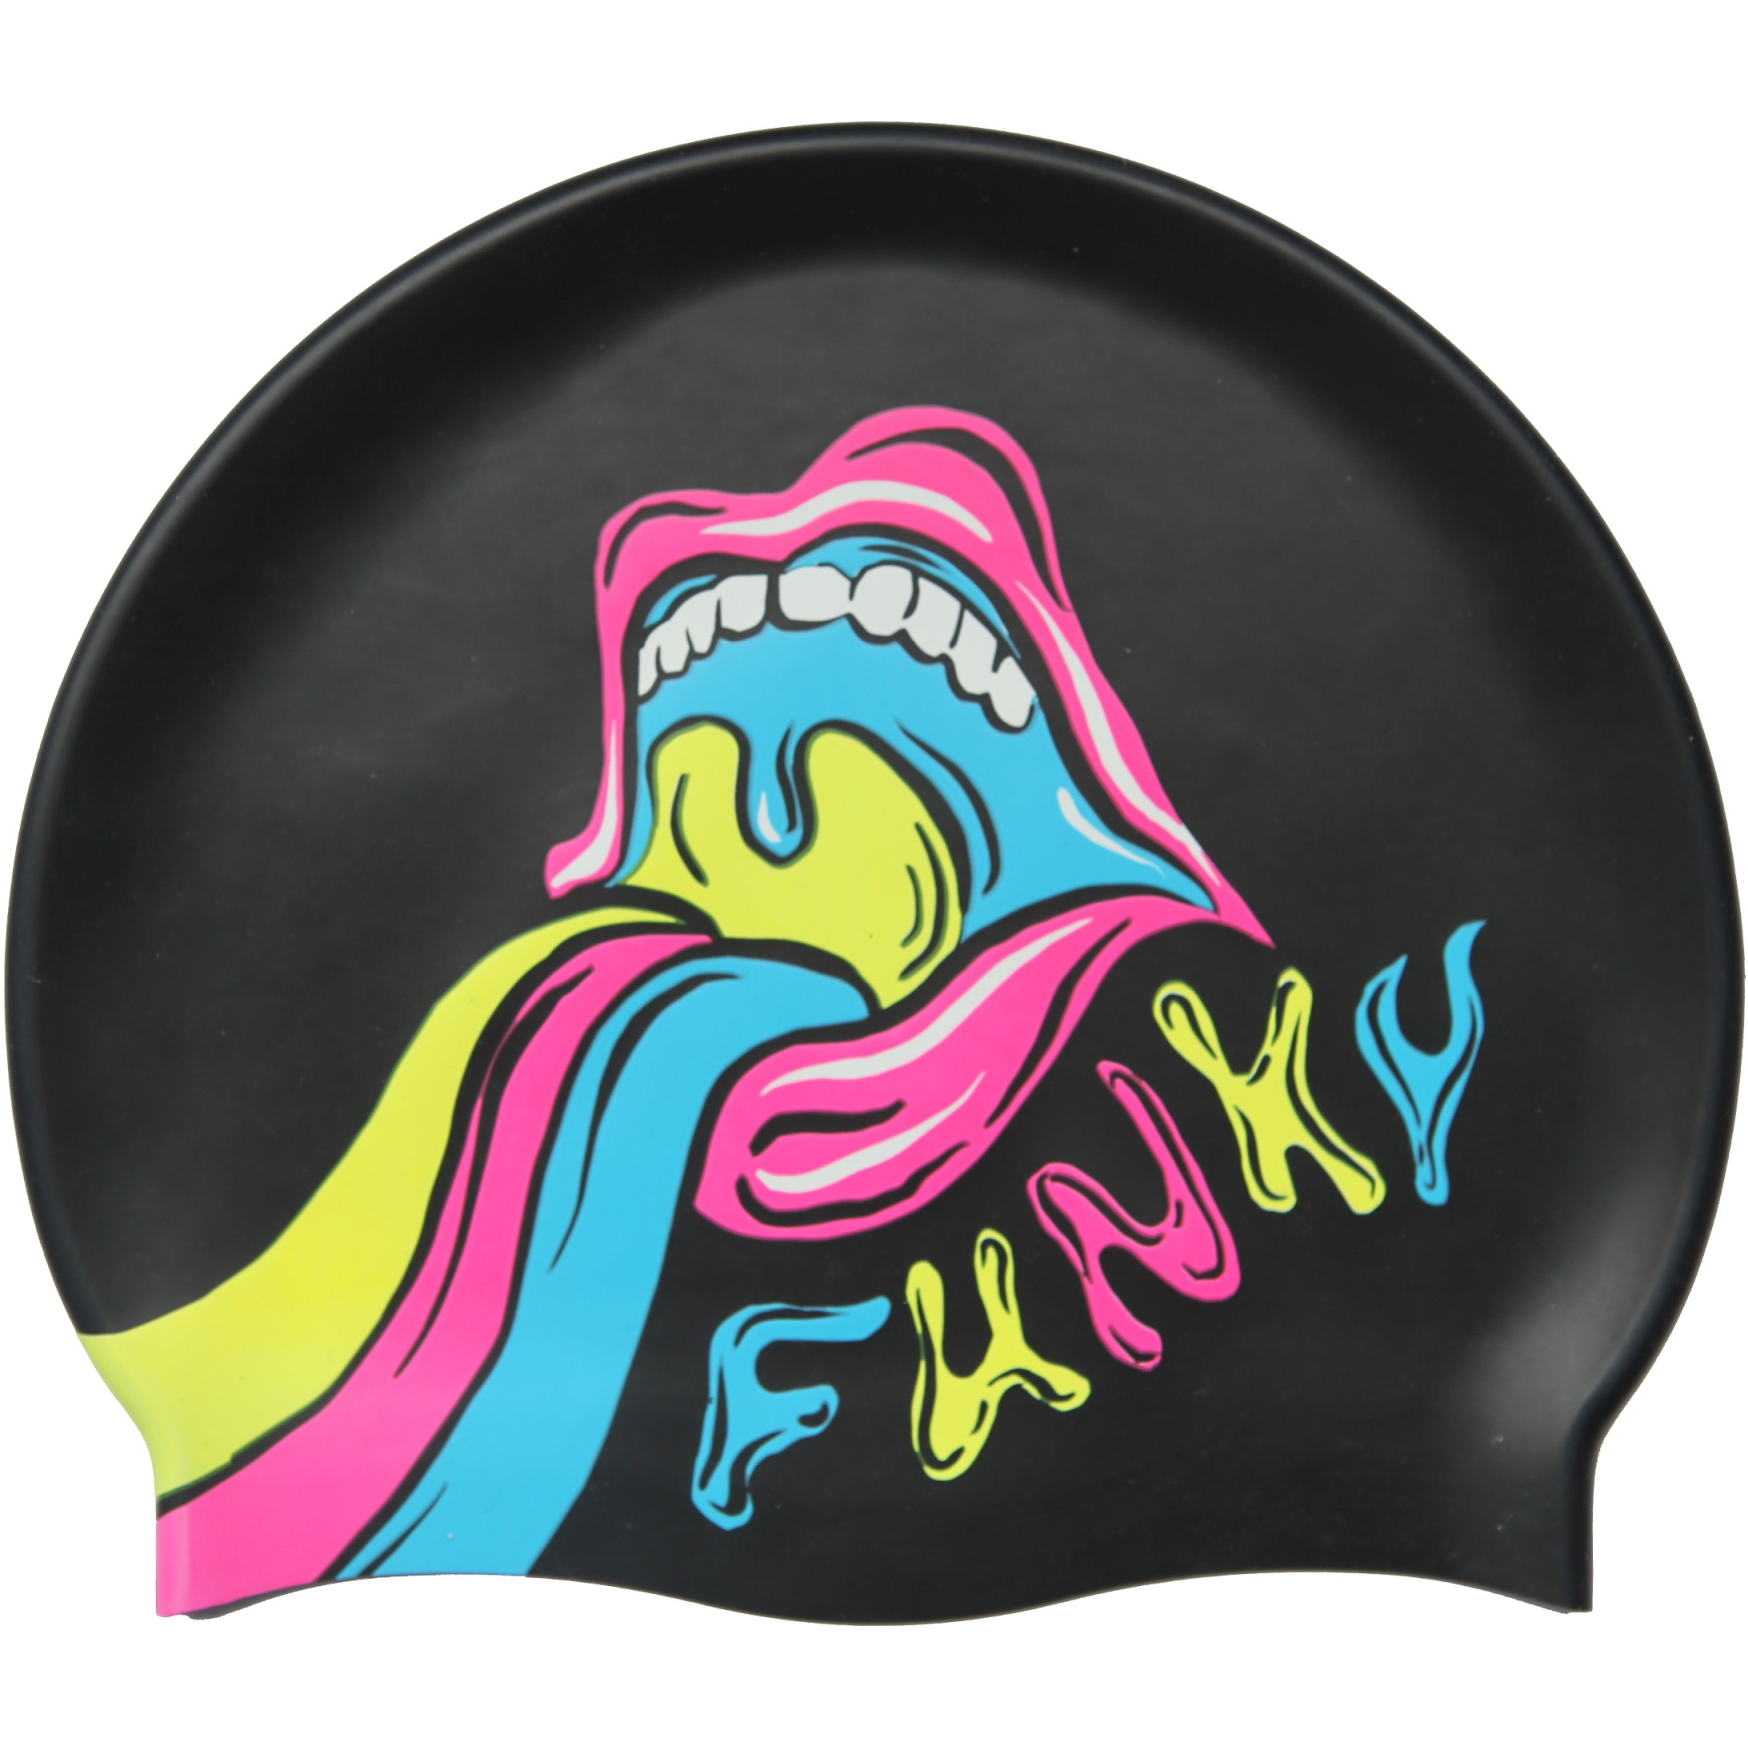 Produktbild von Funky Trunks Silikon Badekappe - Slurpee